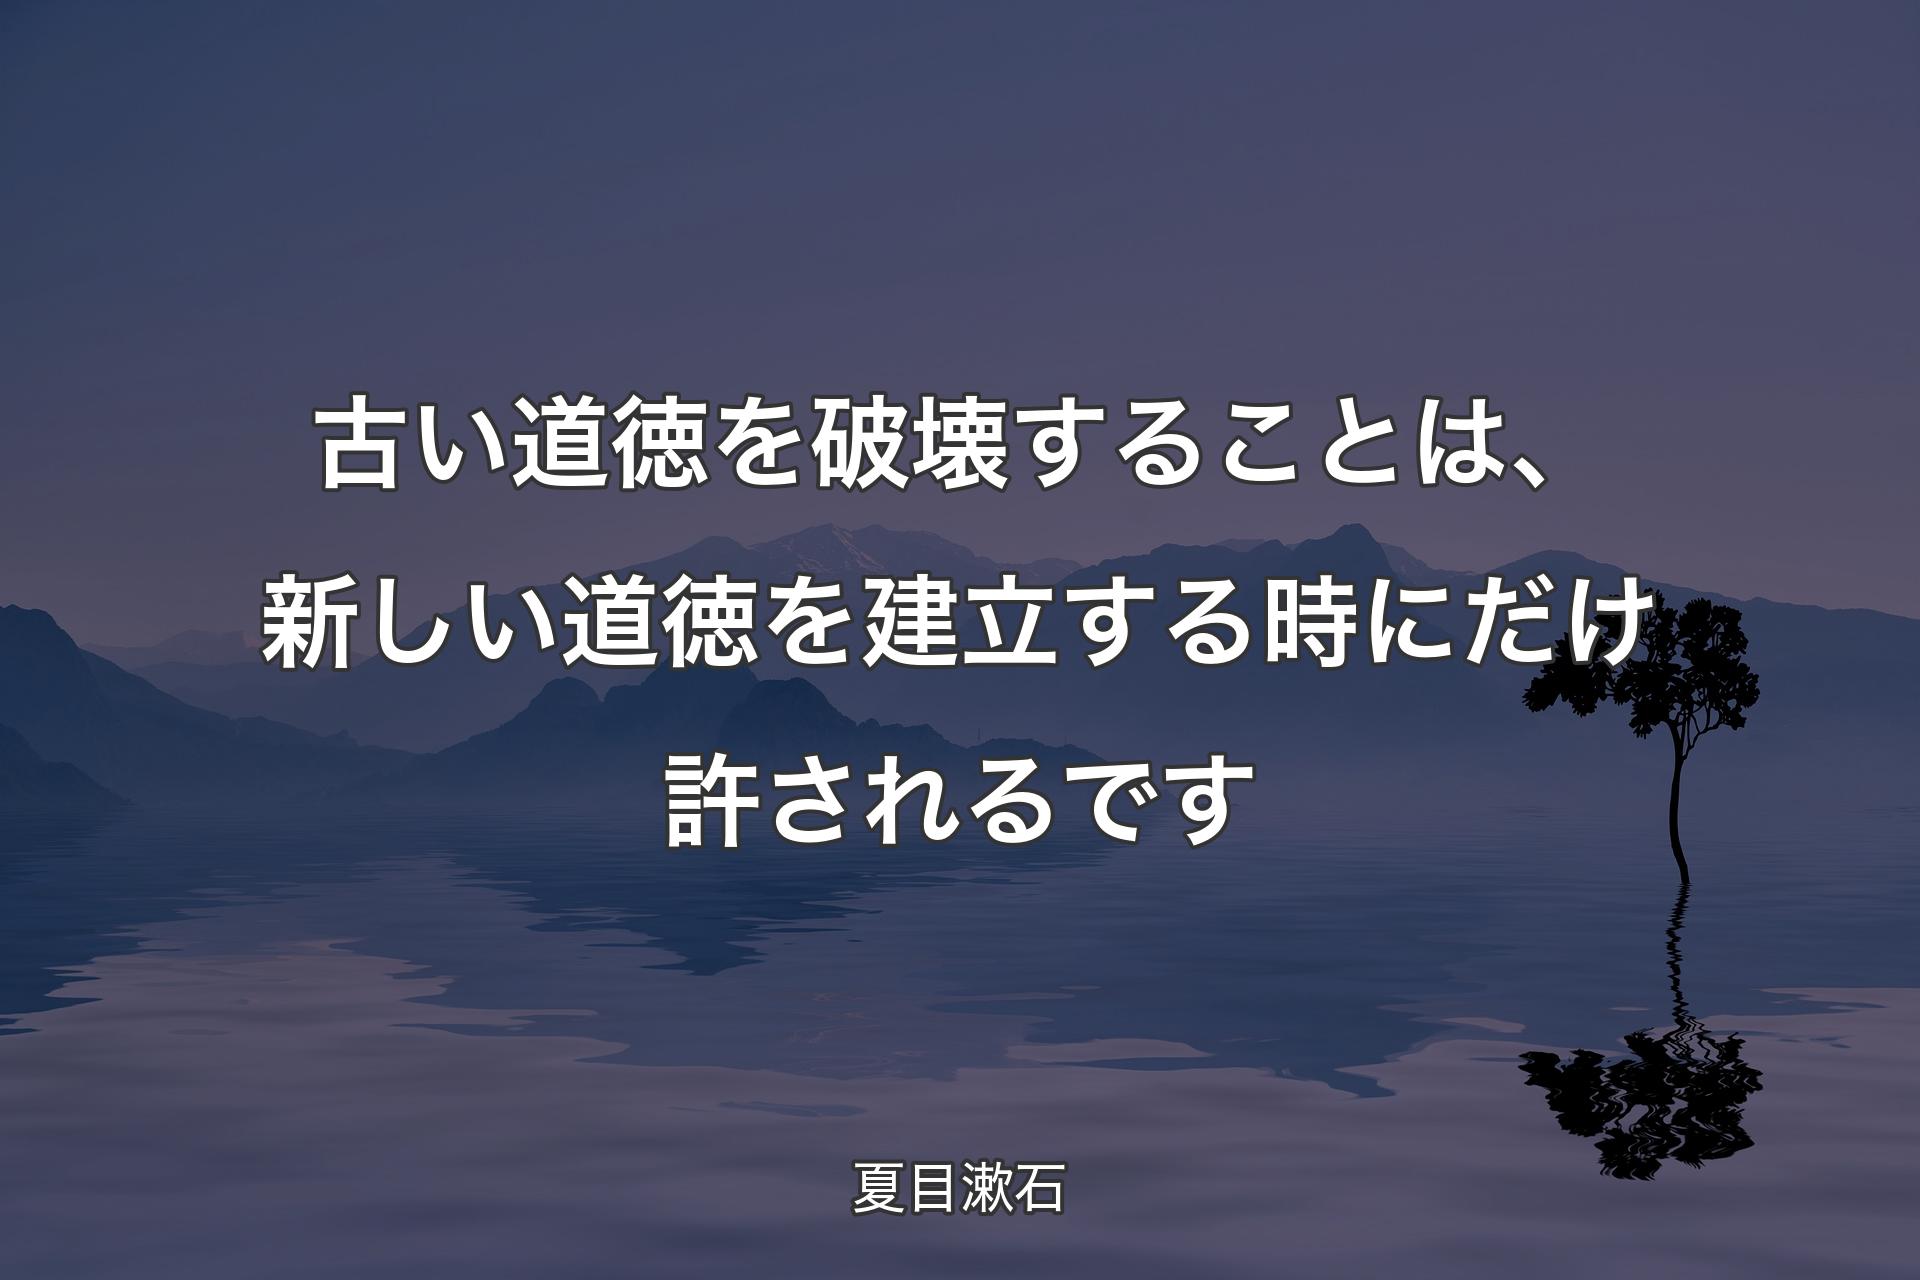 【背景4】古い道徳を破壊することは、新しい道徳を建立する時にだけ許されるです - 夏目漱石